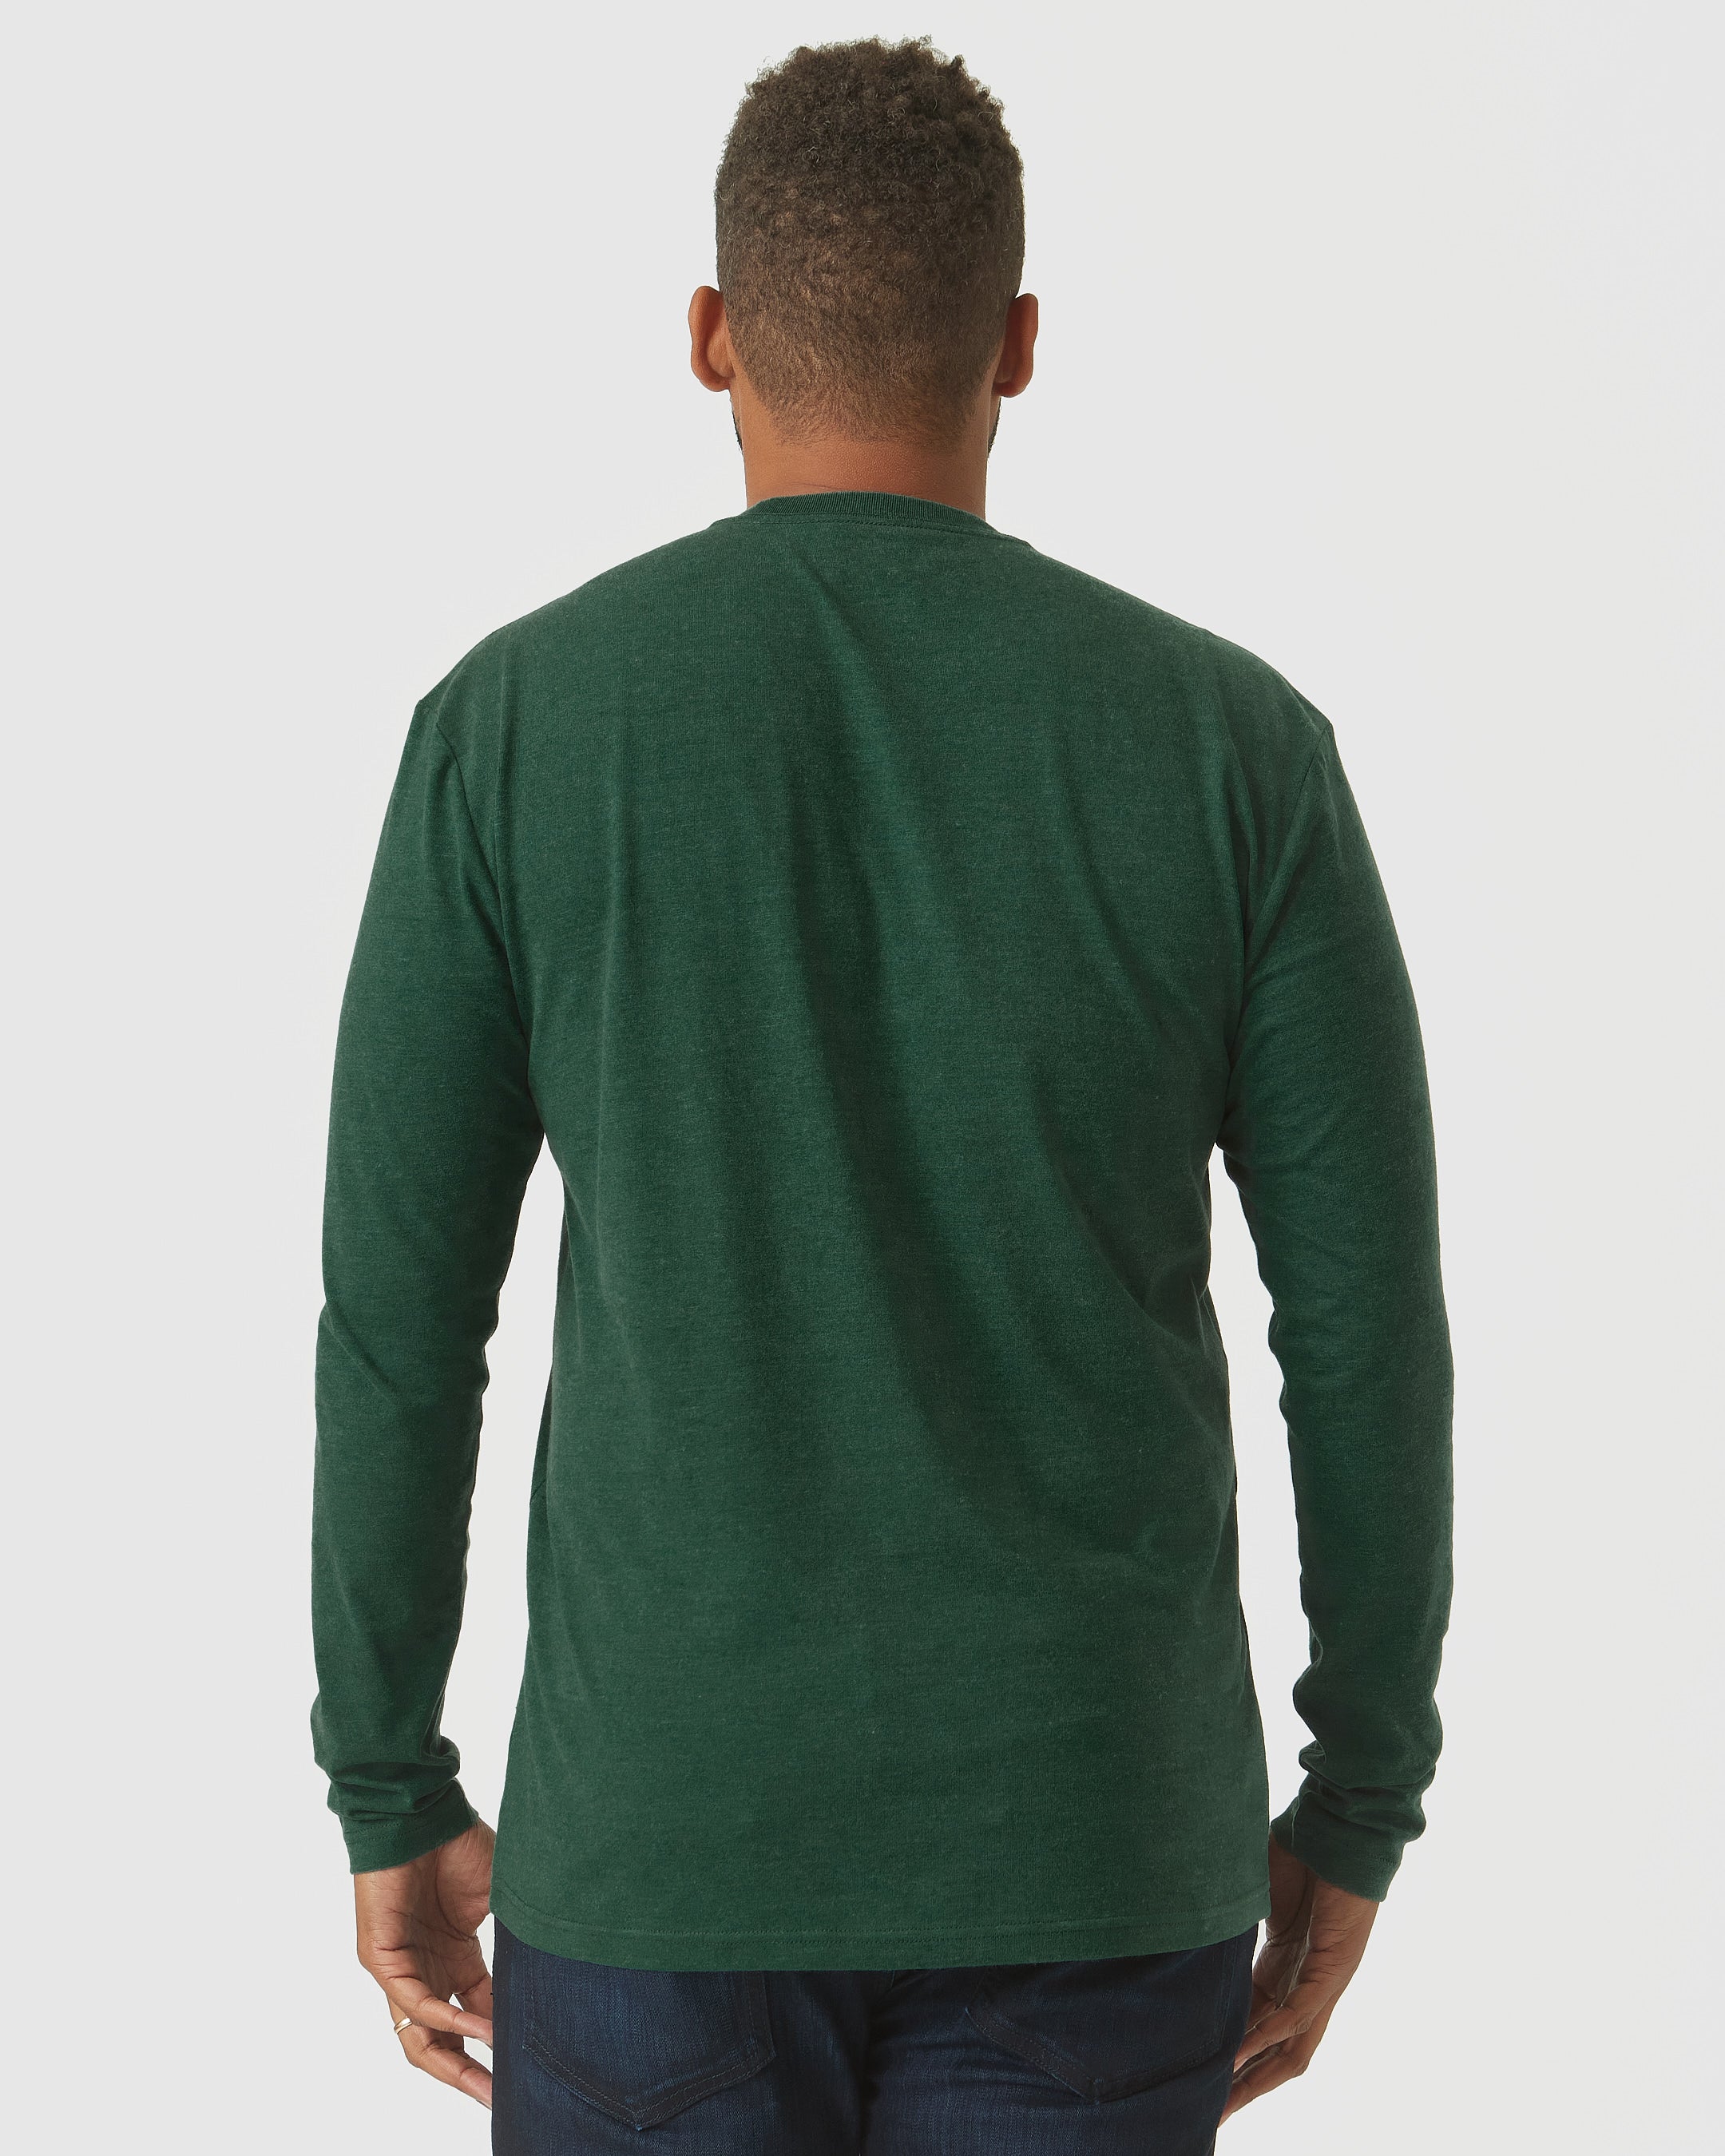 Evergreen Heather Long Sleeve T-Shirt